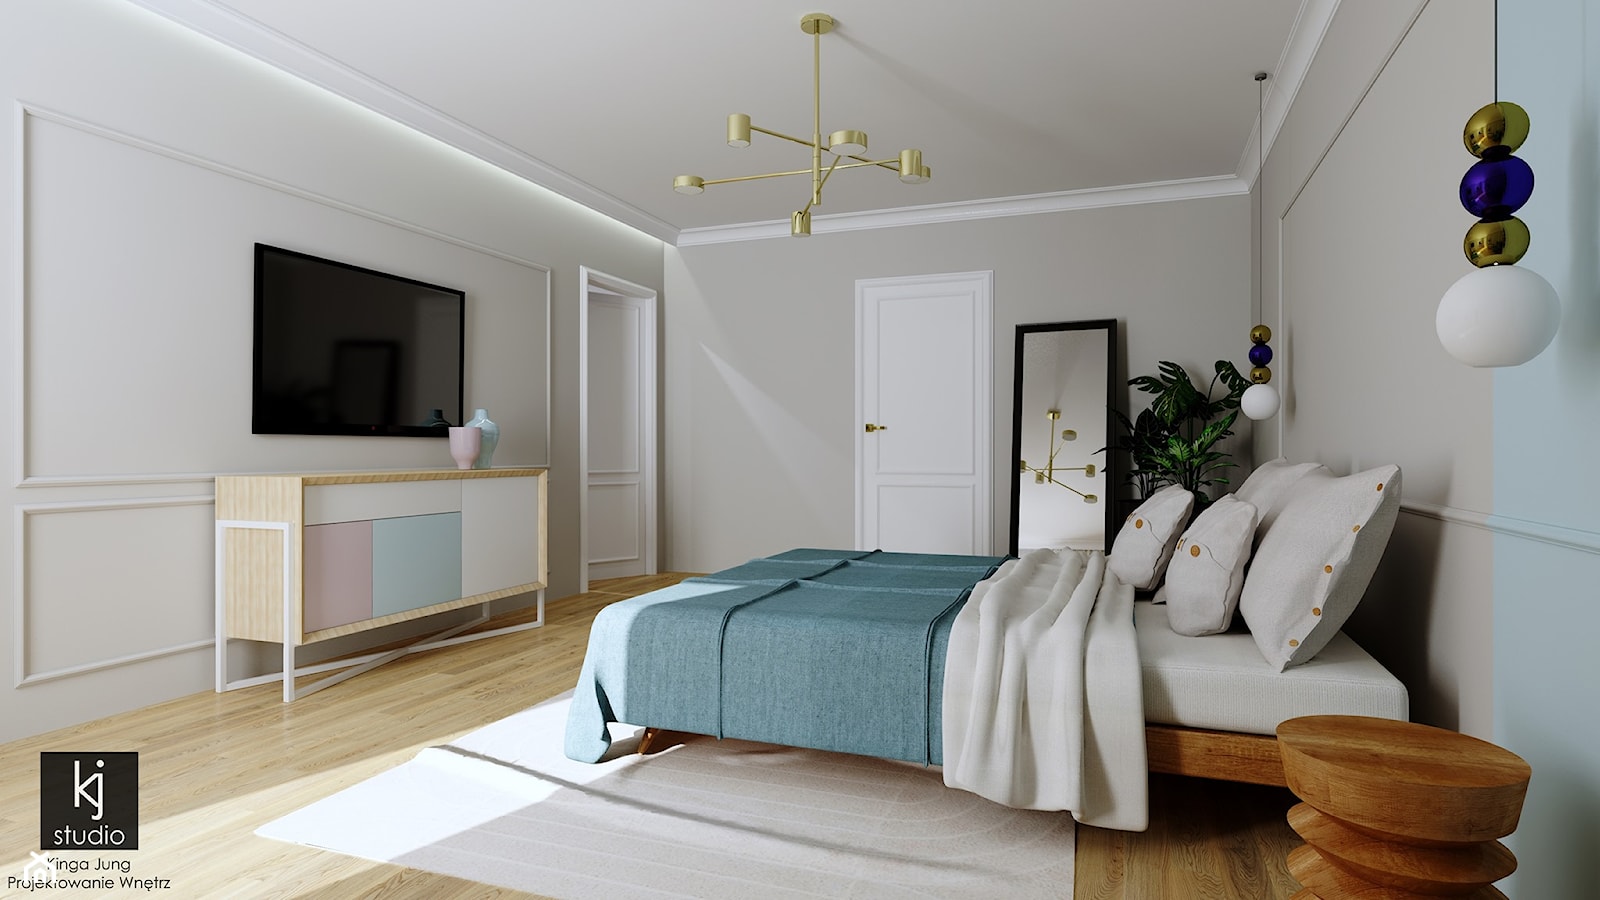 Sypialnia w błękicie i różu - Sypialnia, styl nowoczesny - zdjęcie od KJ Studio Projektowanie wnętrz - Homebook